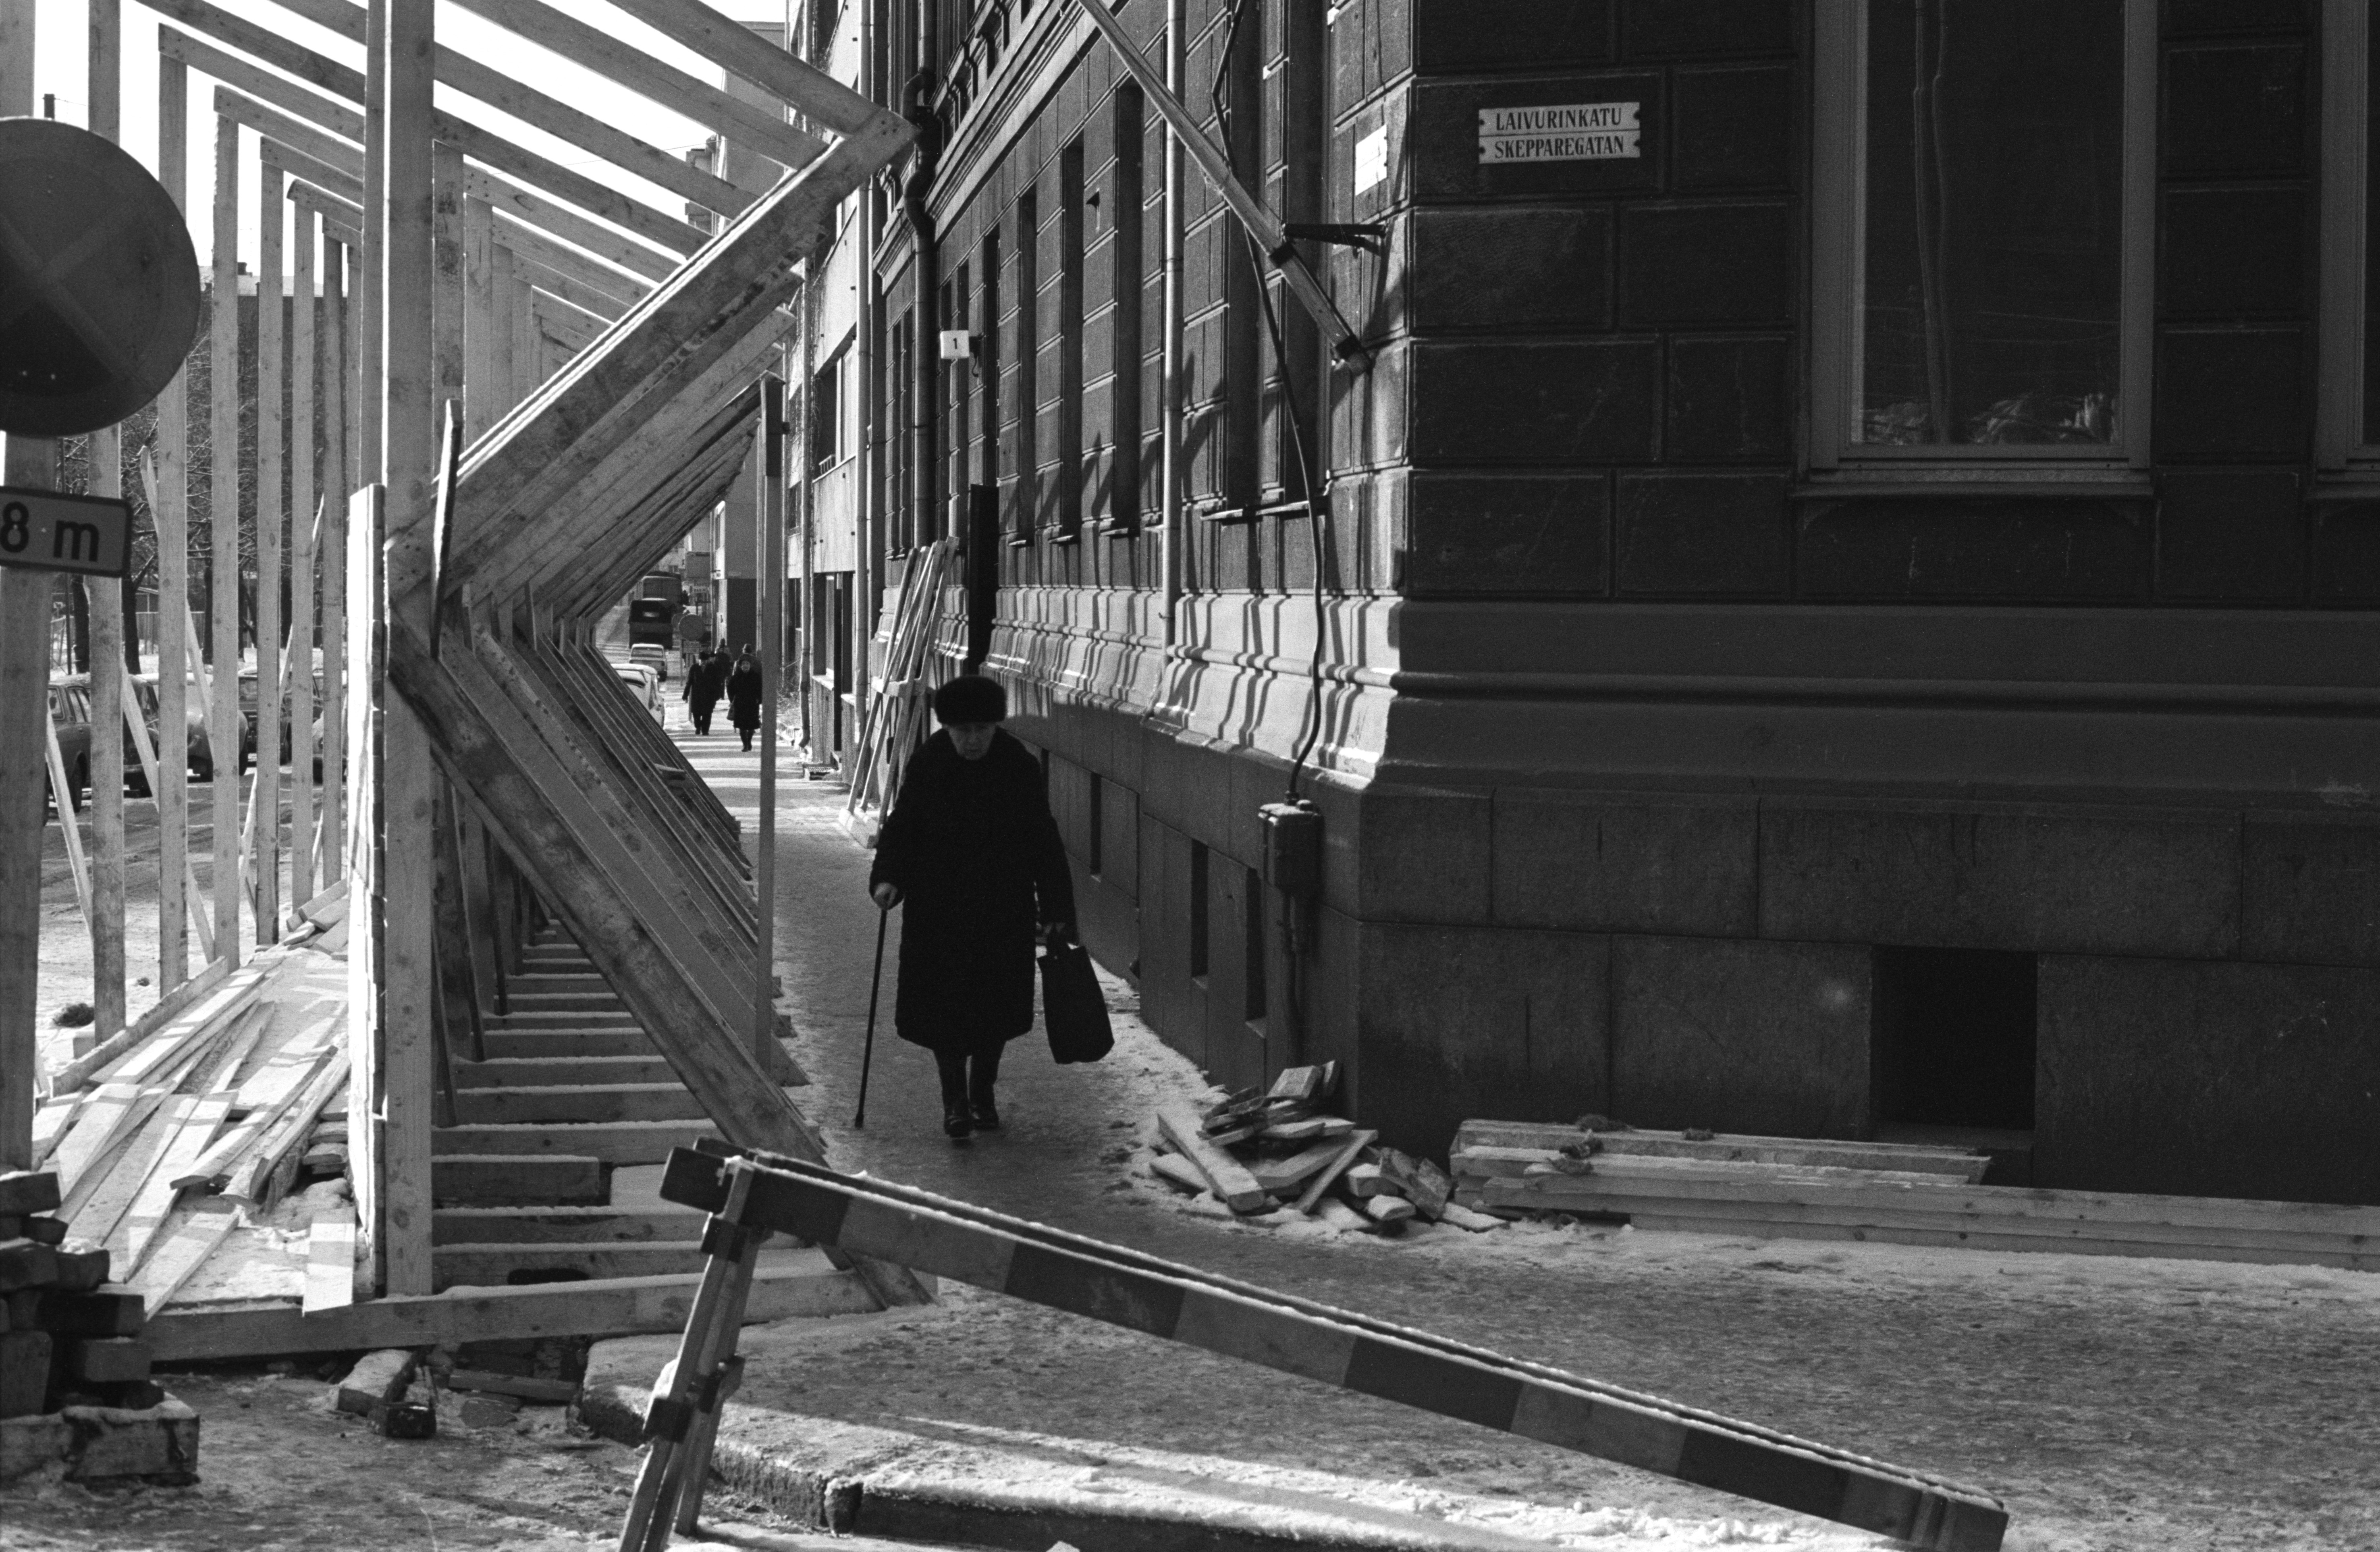 Vanha nainen kepin kanssa kävelemässä purettavan kerrostalon edustalle rakennetulla puisella jalankulkukäytävällä Laivurinkadun ja Sepänkadun kulmassa.